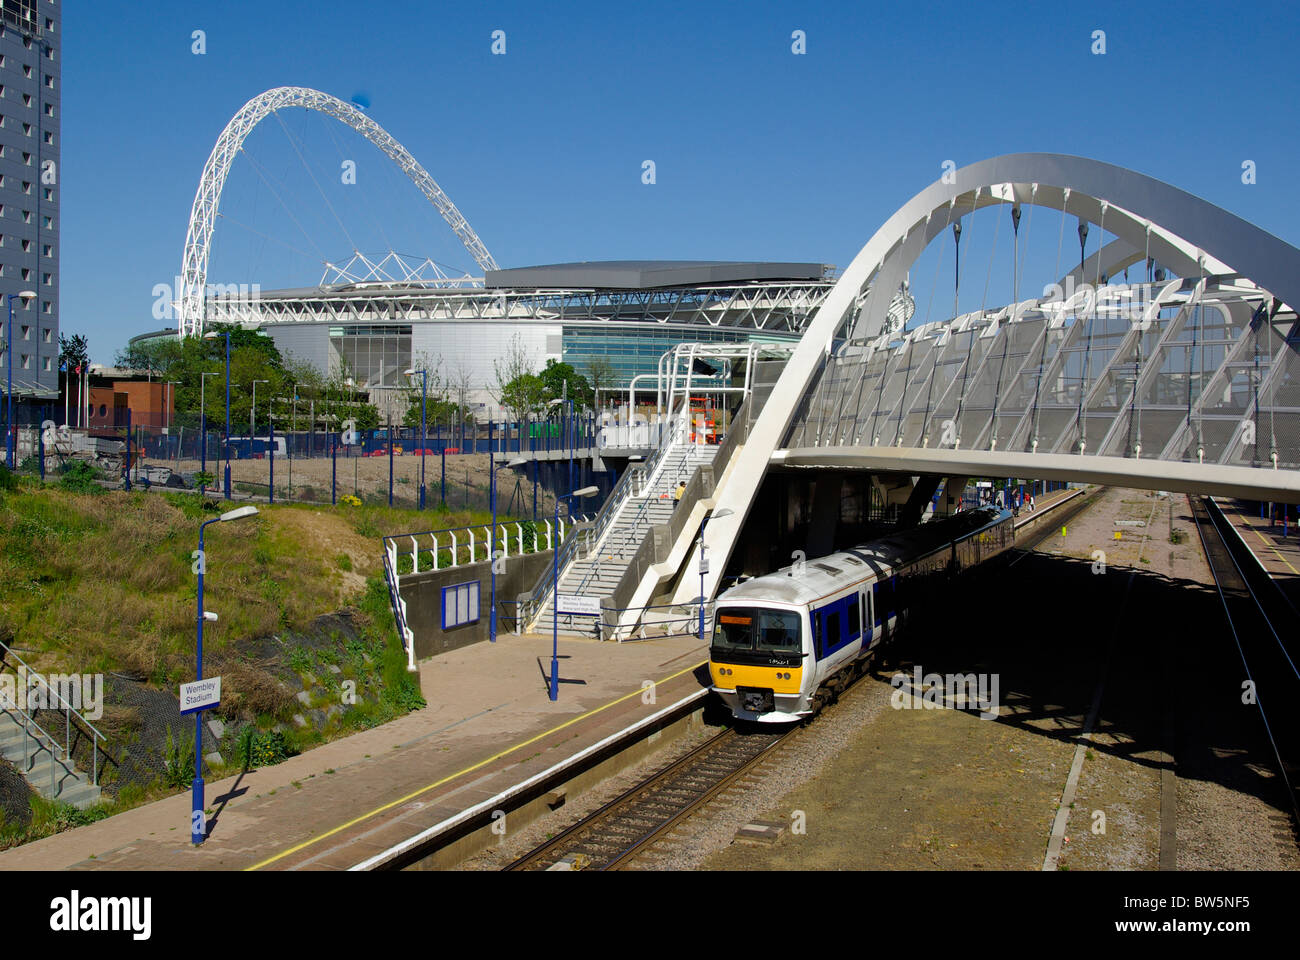 Nouveau Stade de Wembley, Londres Banque D'Images